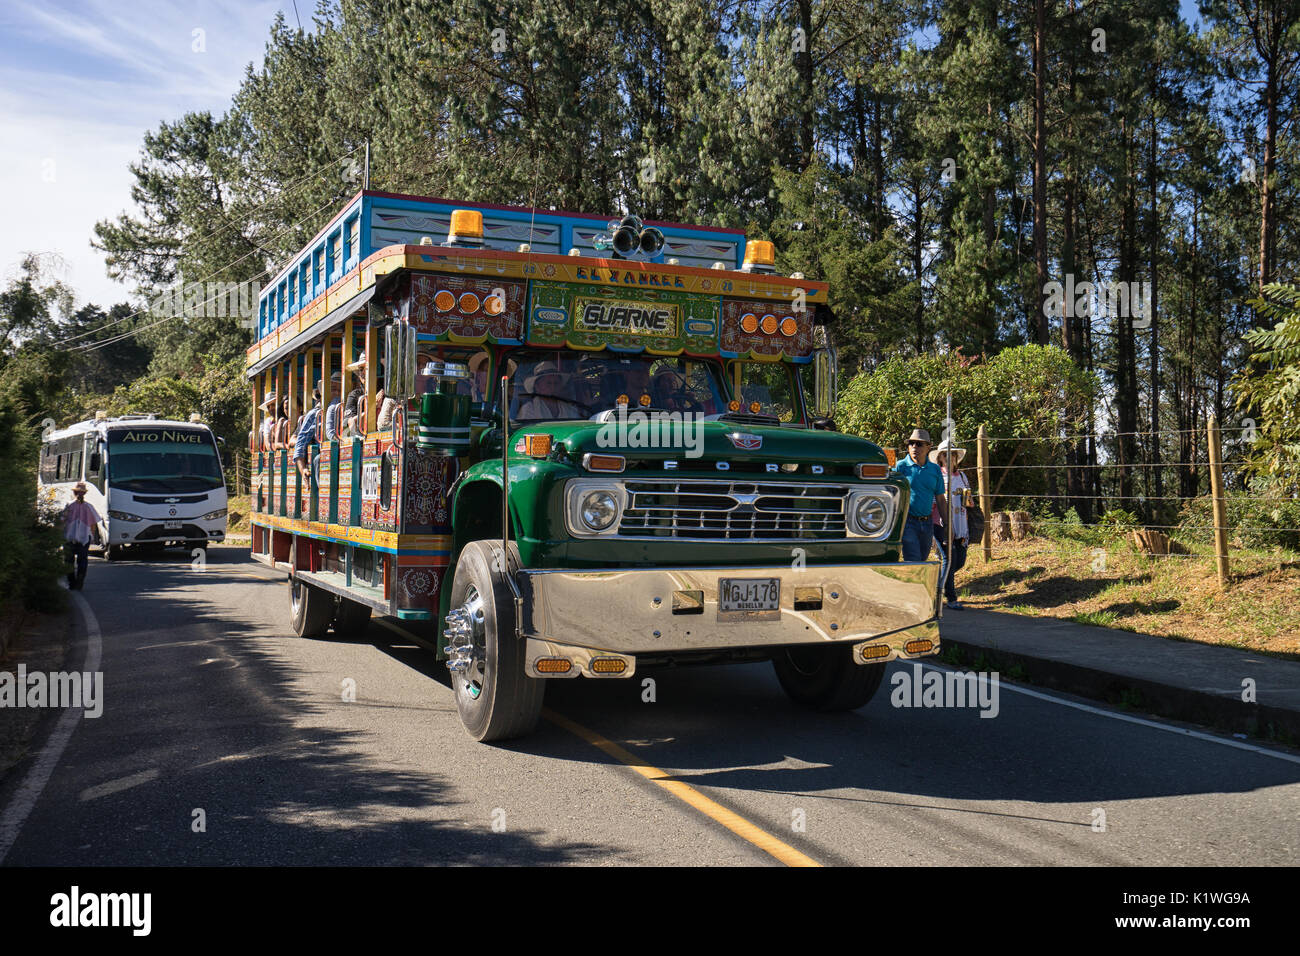 August 6, 2017 Medellin, Kolumbien: Die alten bunten Busse genannt "Chiva" für Transport und als Party Bus während der jährlichen Flower Festival in Sa verwendet Stockfoto